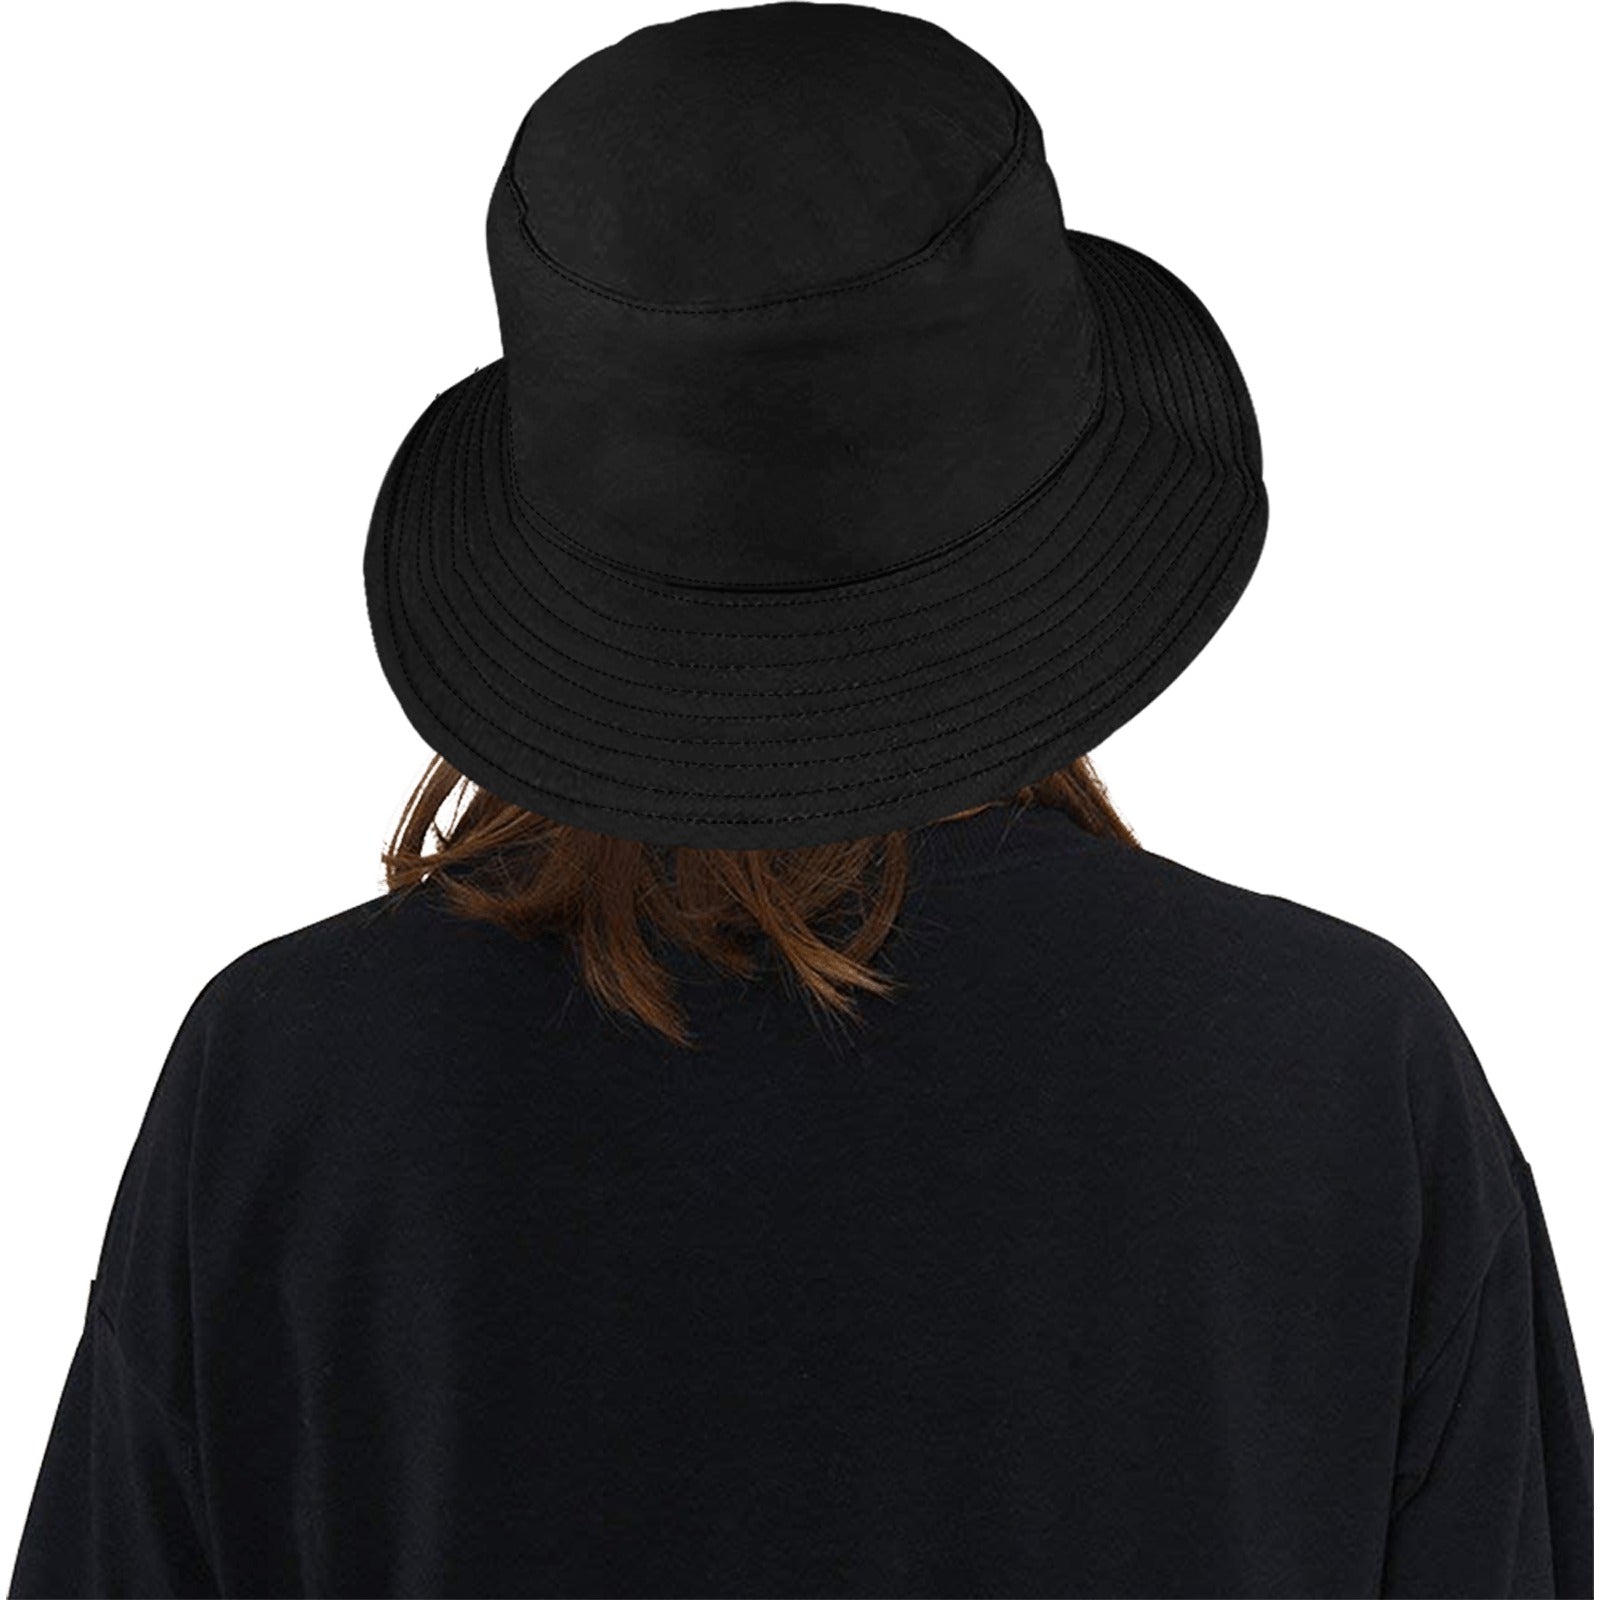 LiveLike Bucket Hat